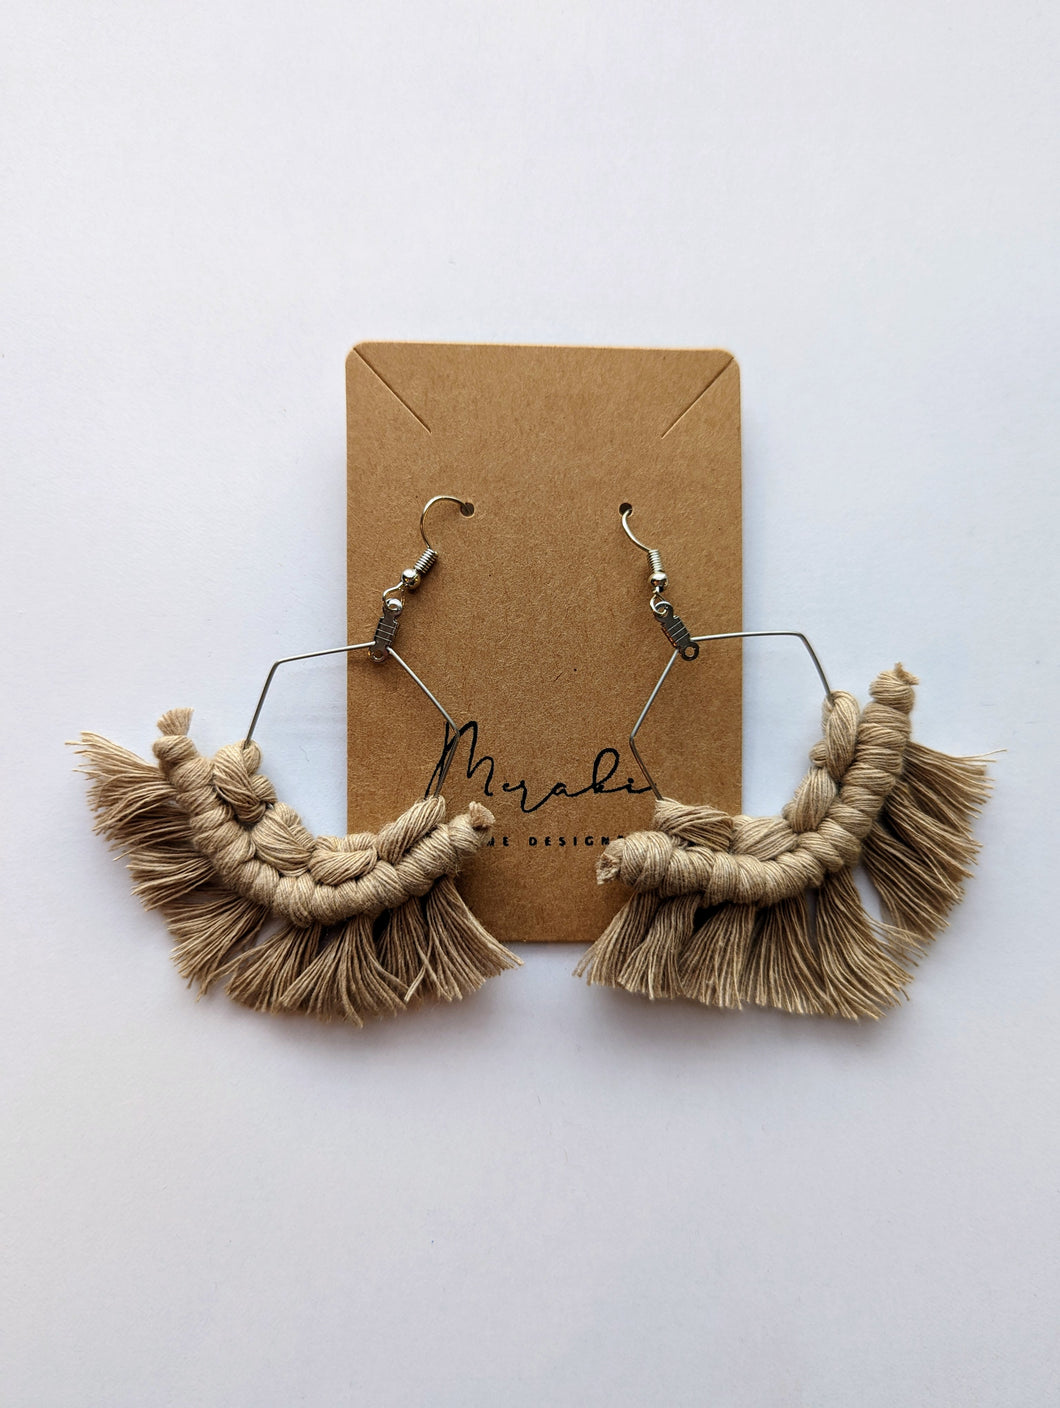 Handmade macrame fringe earrings